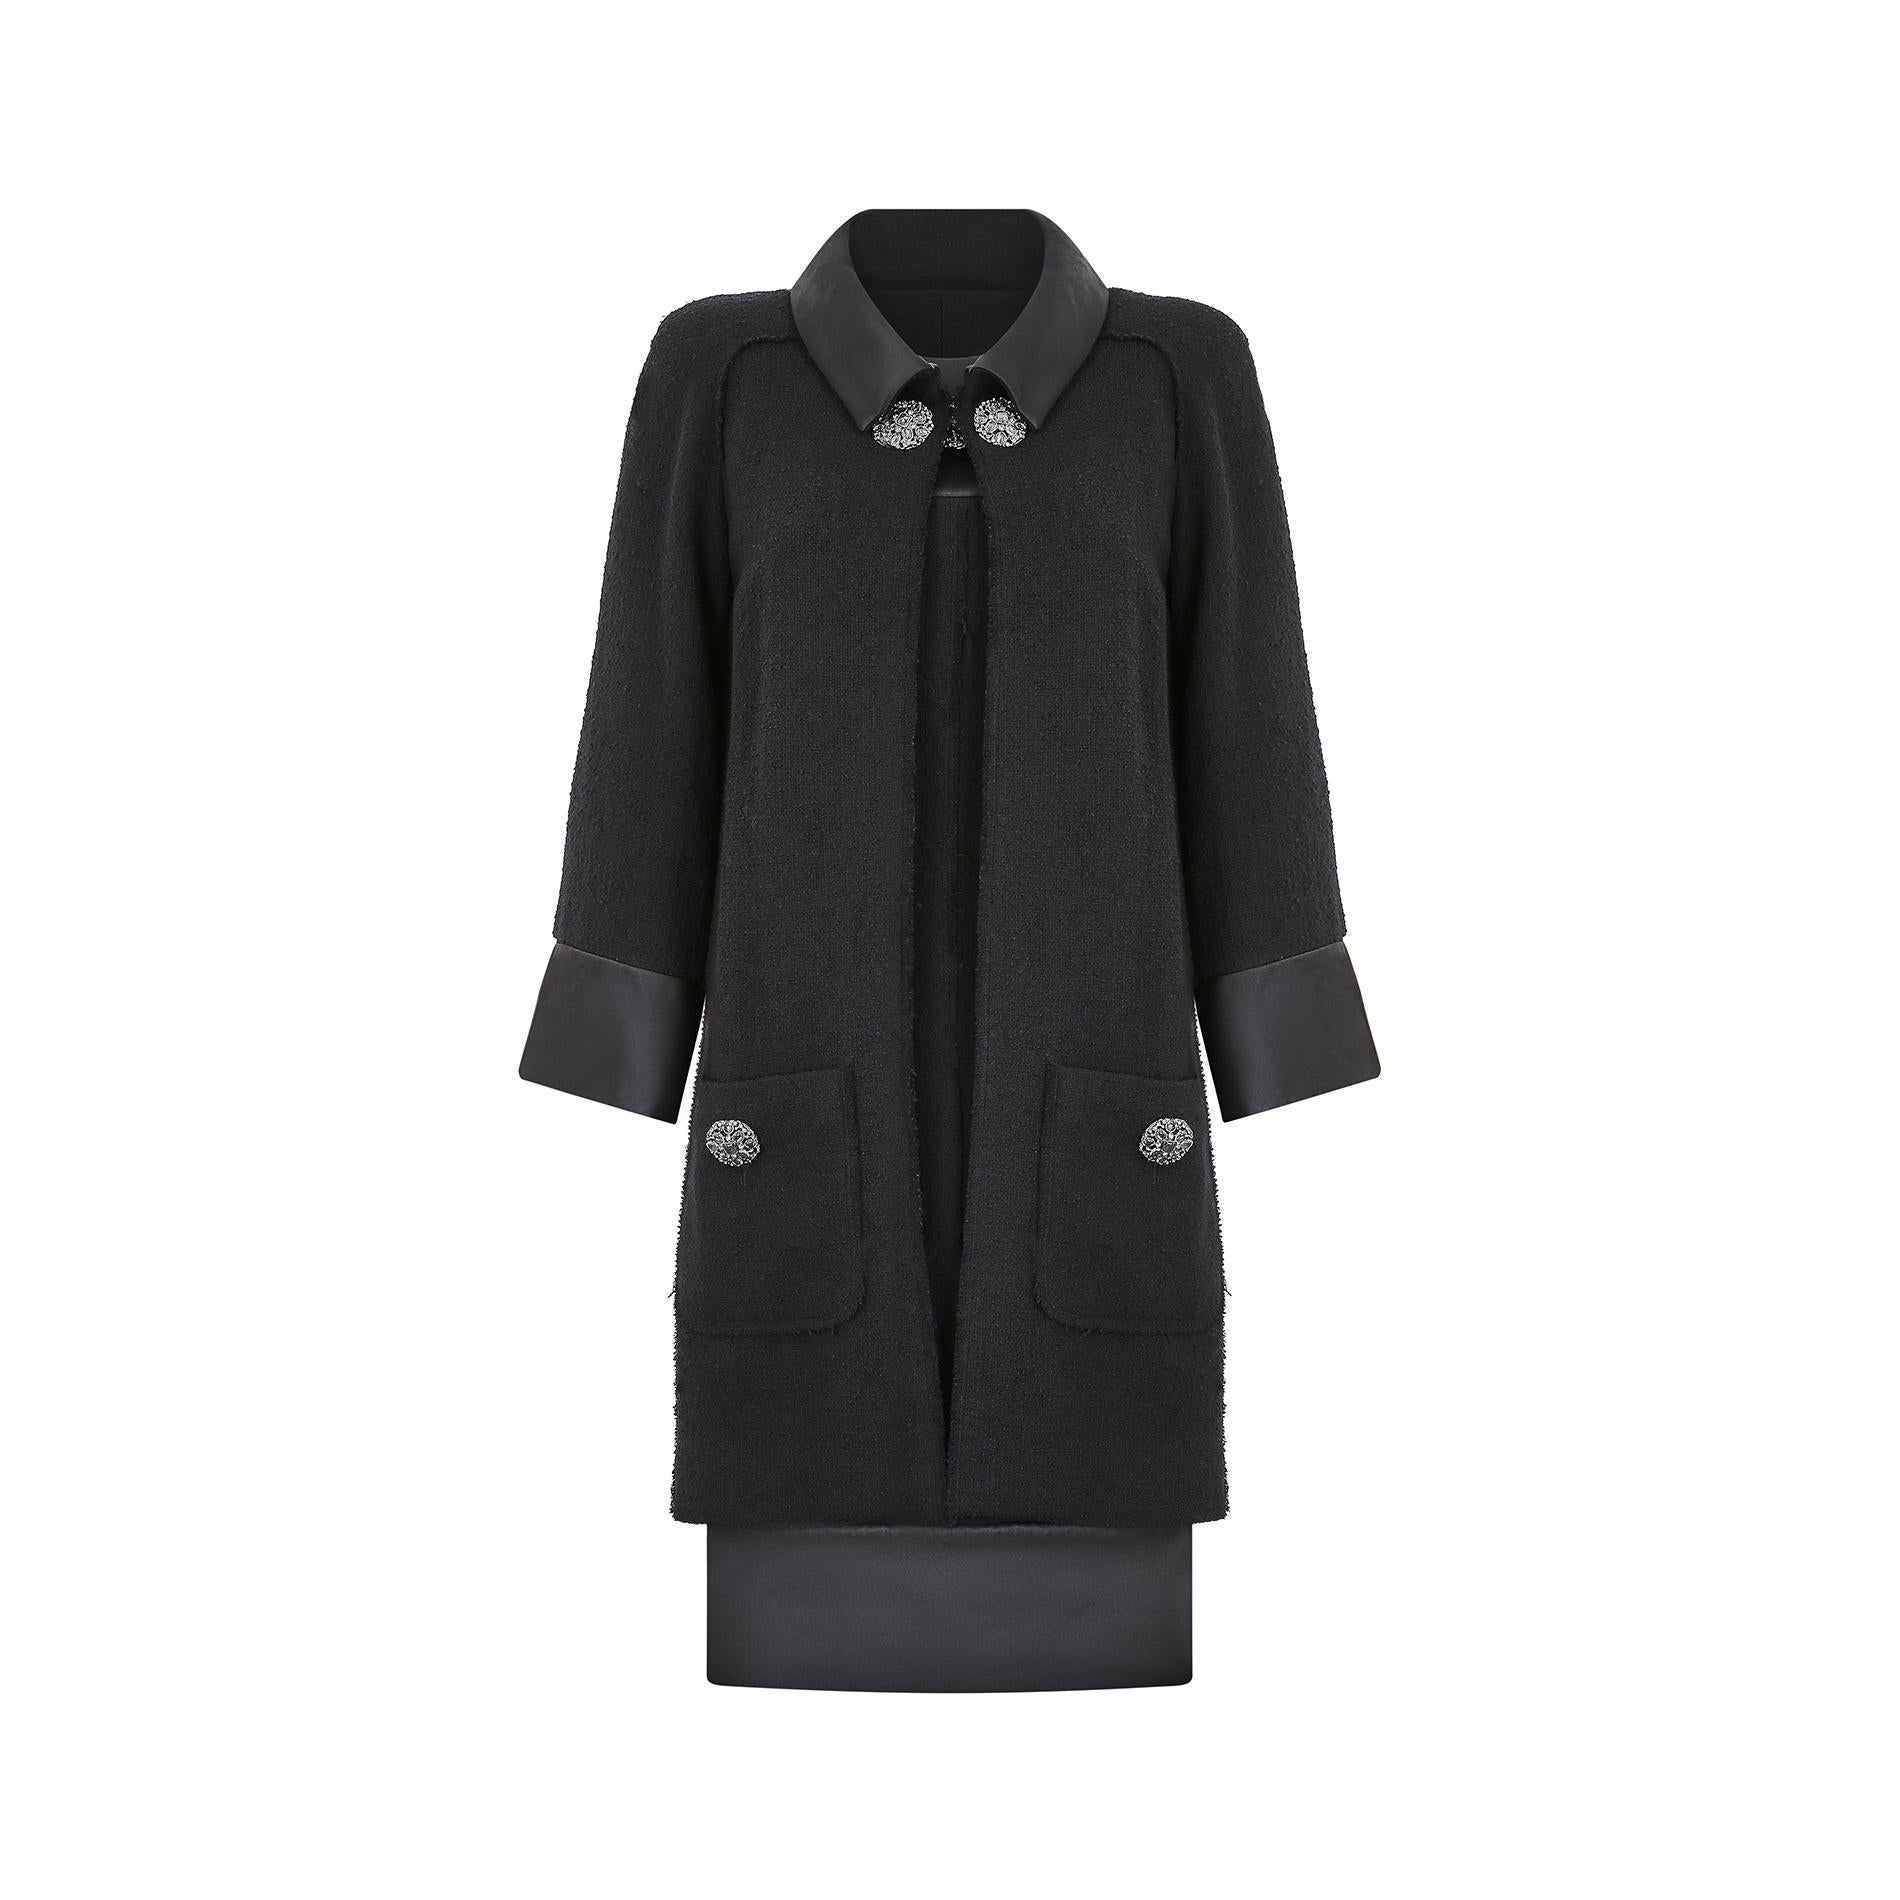 Ce fabuleux tailleur habillé noir automne-hiver 2015 Chanel by Karl Lagerfeld affiche une touche contemporaine tout en conservant les signatures classiques de la confection Chanel. La robe est coupée dans un style fourreau simple qui rappelle les